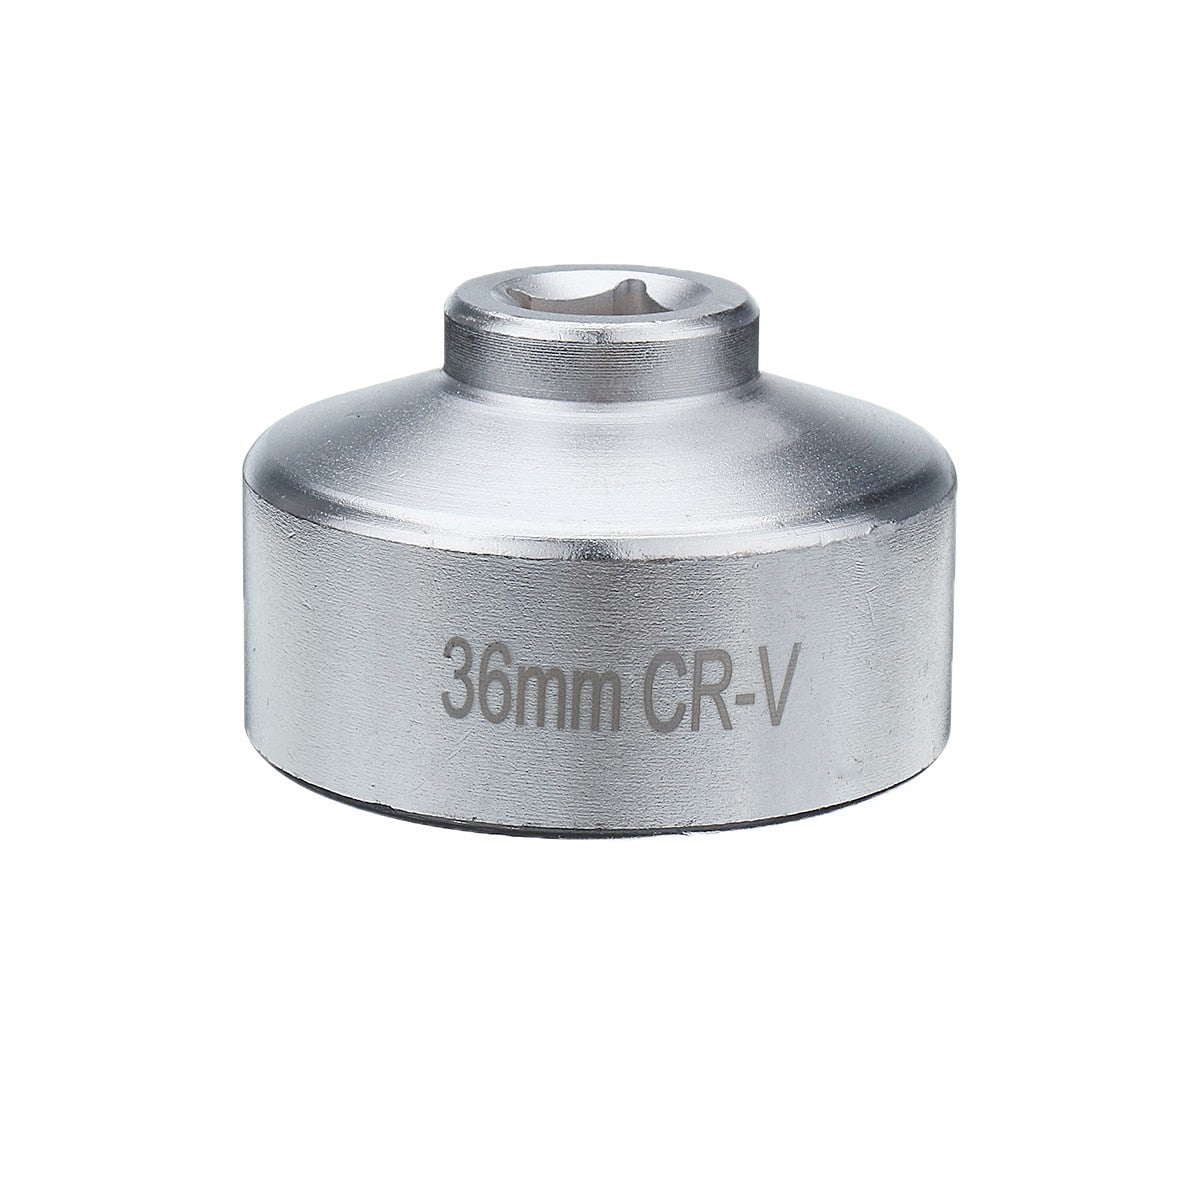 Heavy Duty Low Profile Oil Filter Socket 36mm 3/8" Cartridge Style Filter Socket